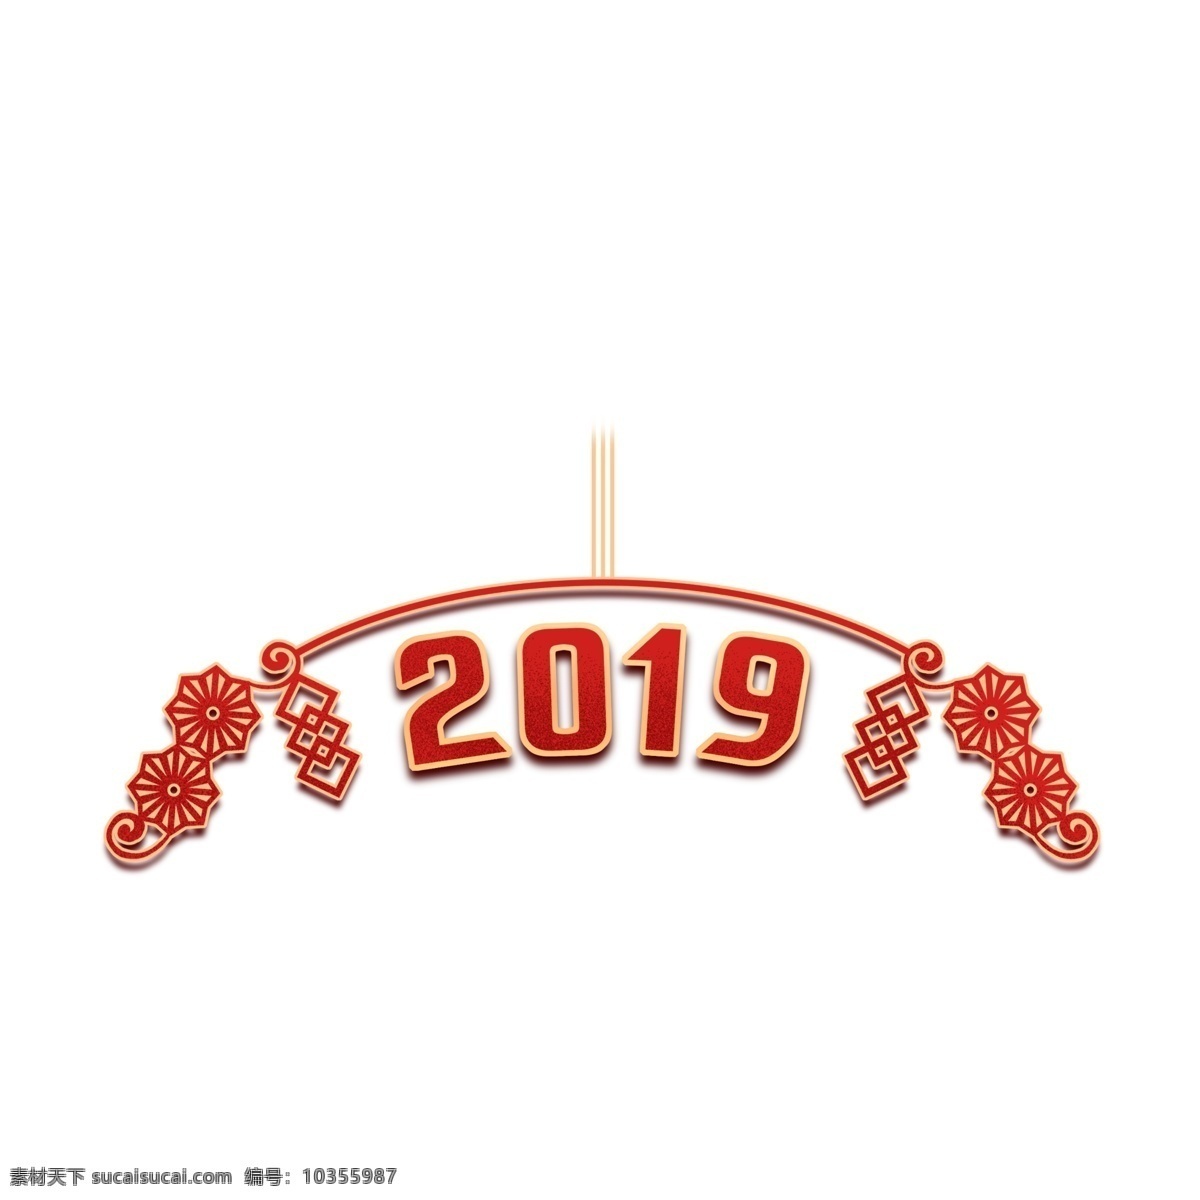 红色 2019 新年 元素 猪年 新年元素 喜庆 字体 手绘 装饰图案 元素设计 简约 创意元素 手绘元素 psd元素